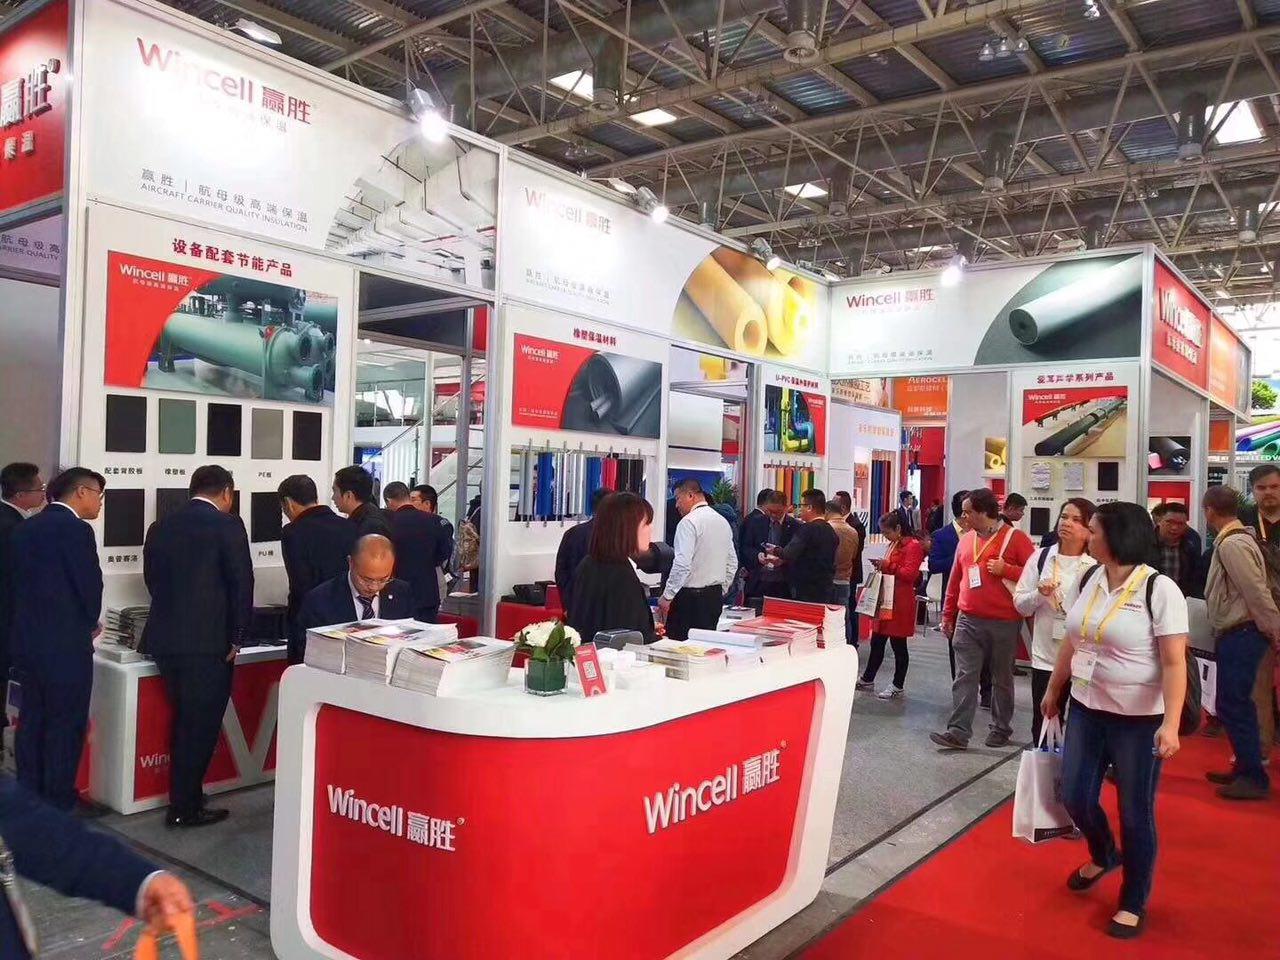 حضور شرکت بازرگانی ثقفی در نمایشگاه تهویه و تبرید پین، پکن، CRH 2018